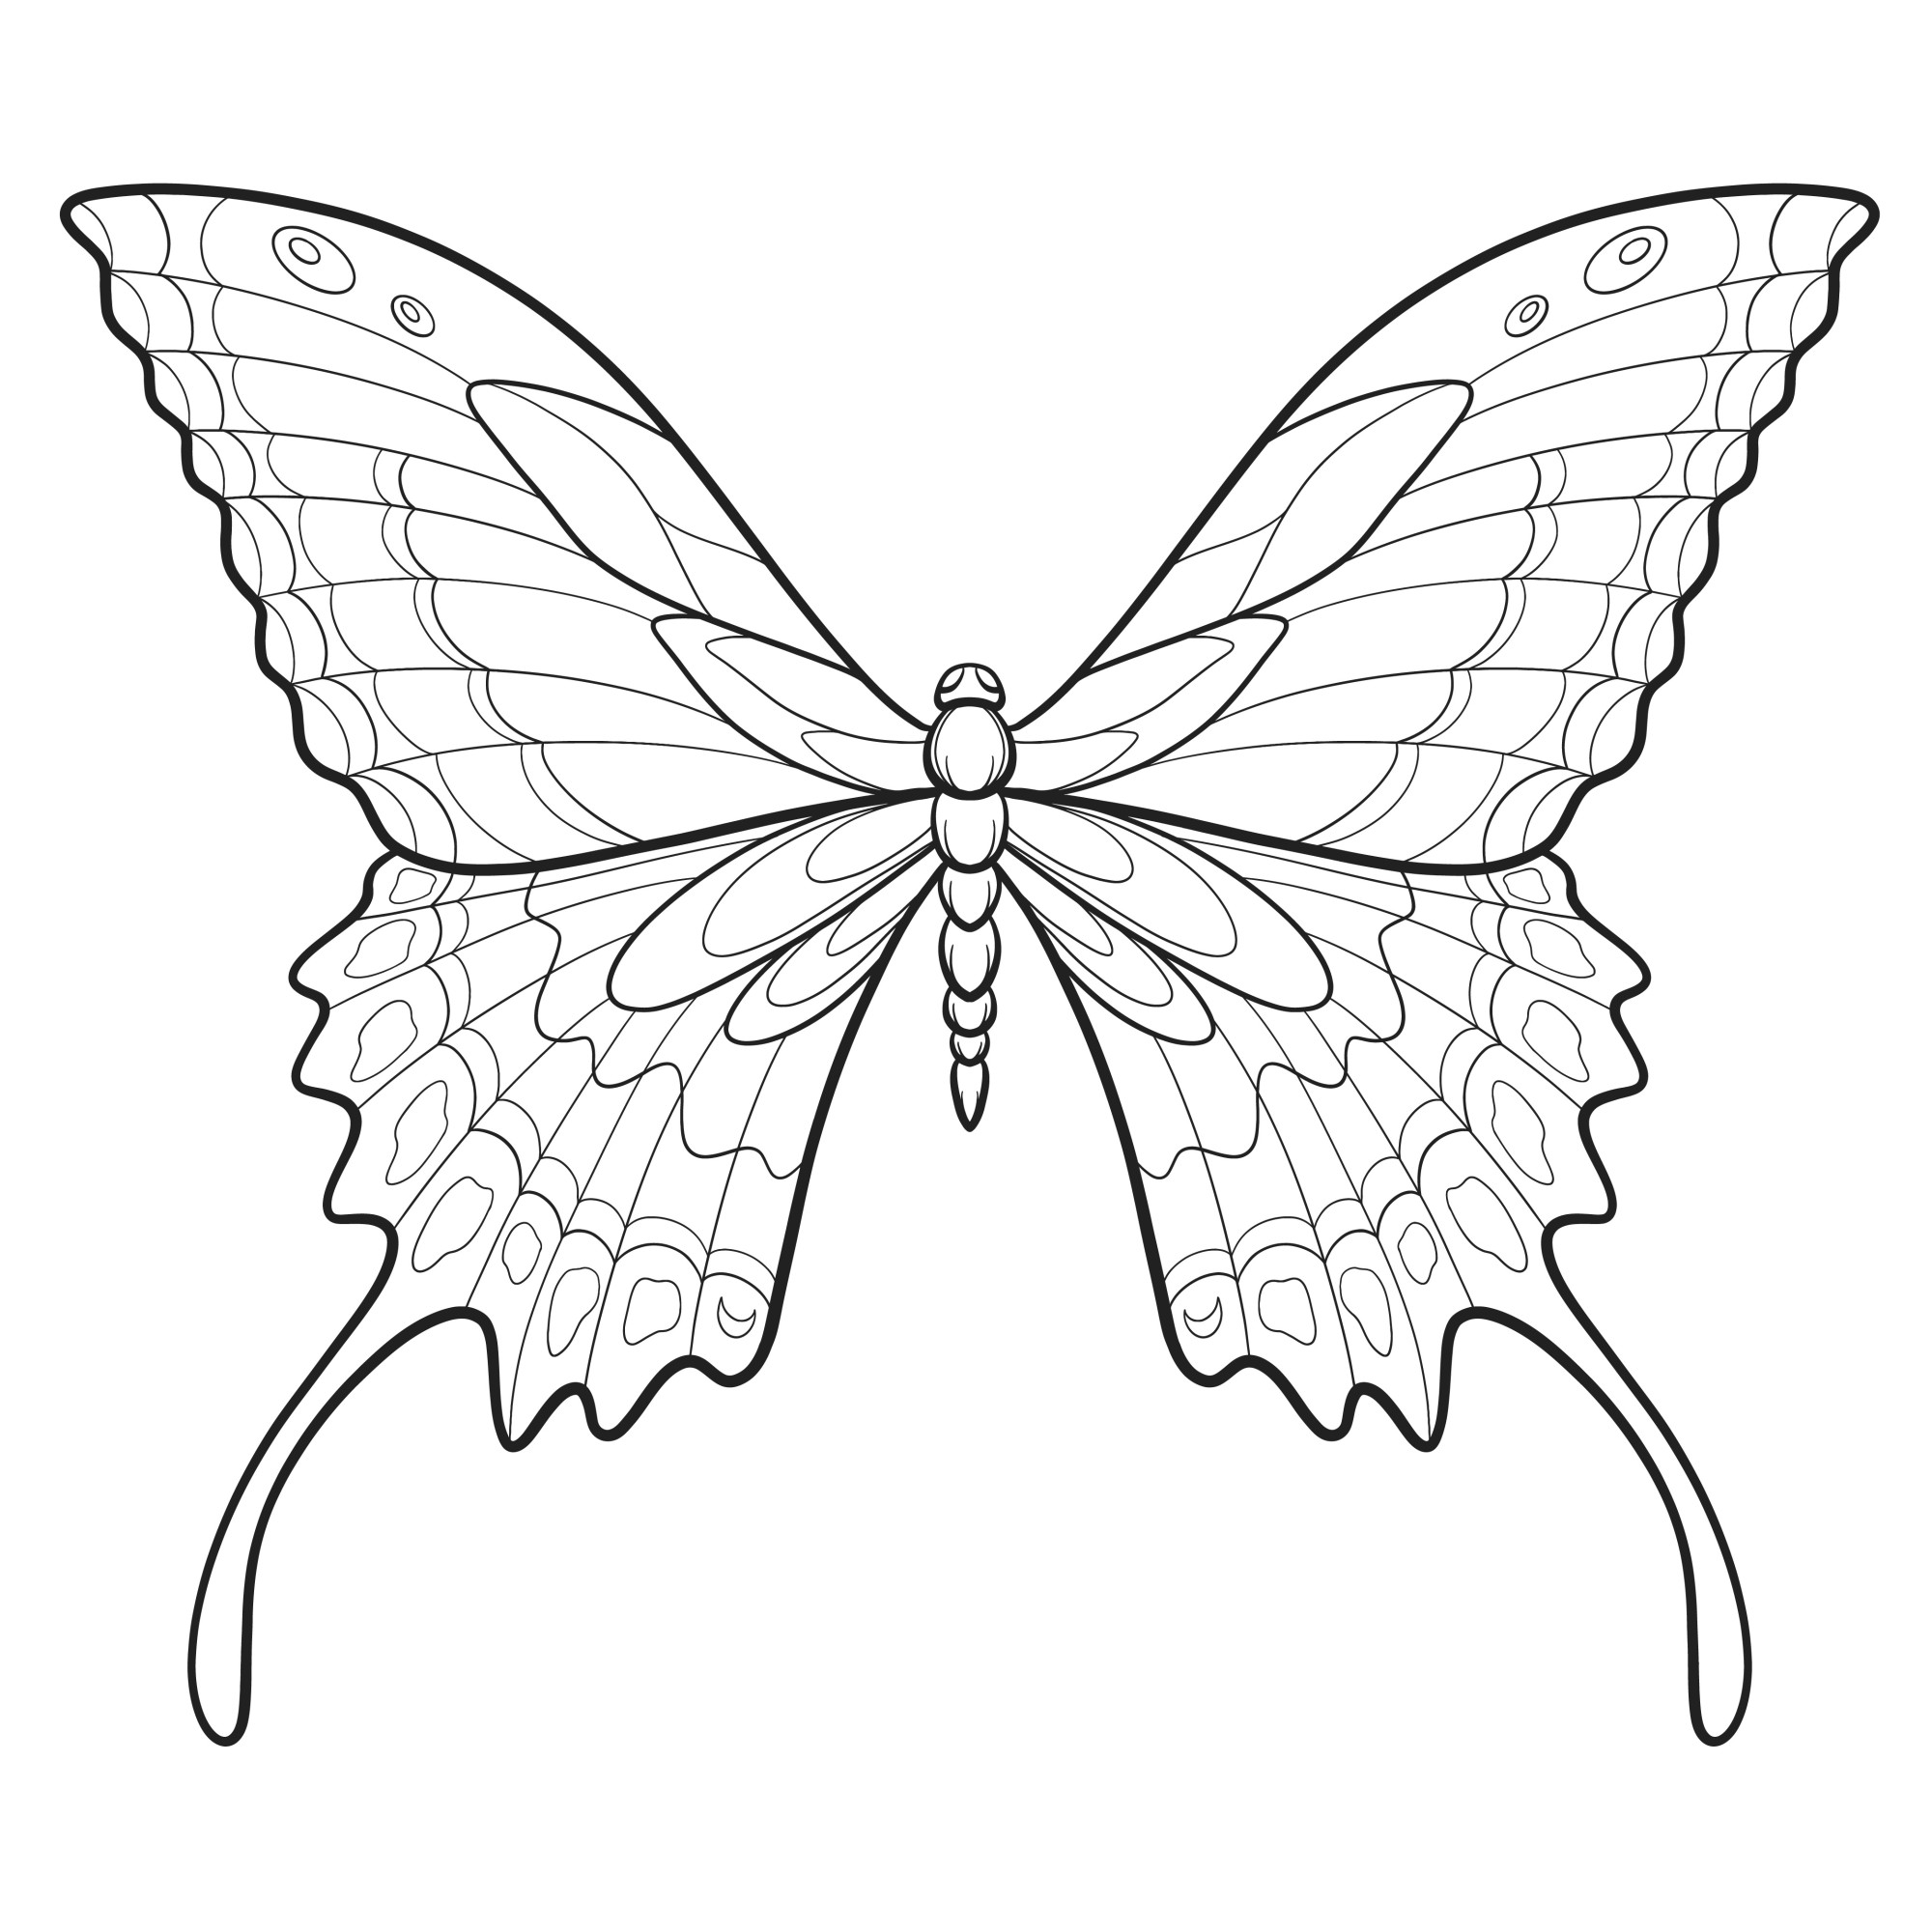 Раскраска для детей: бабочка с расправленными радужными крыльями